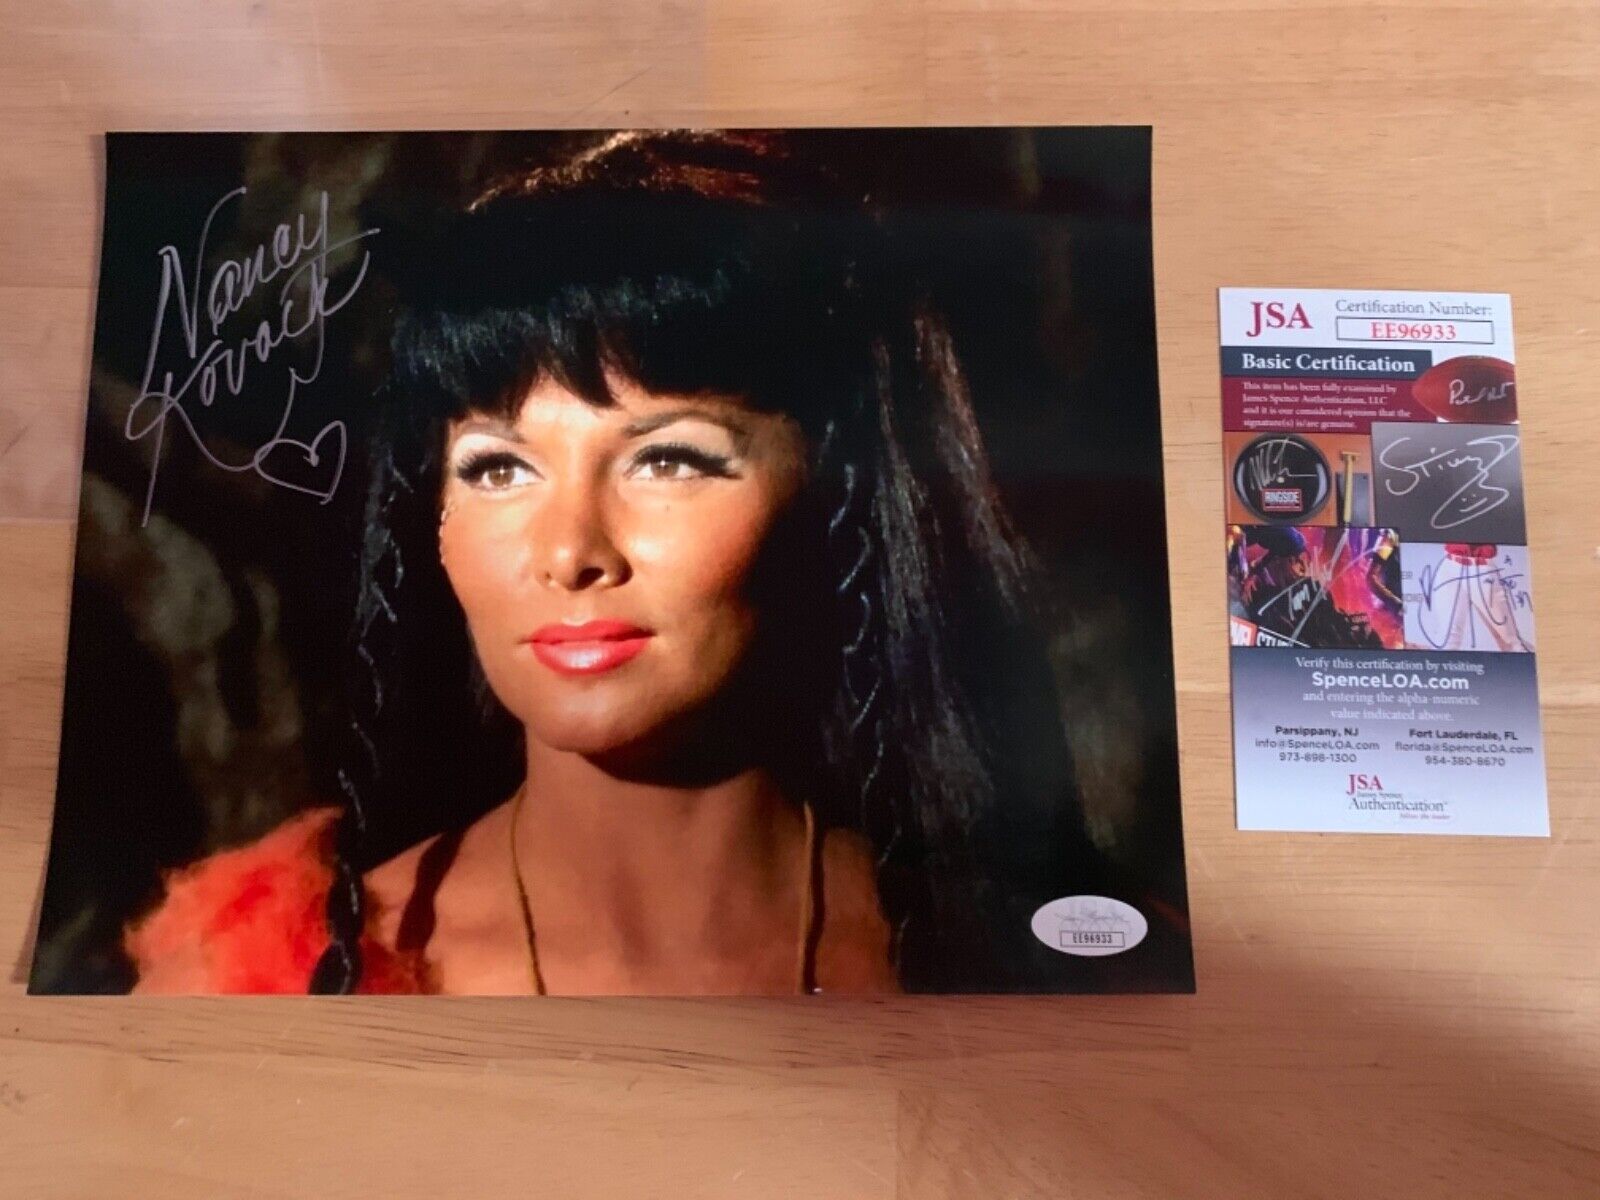 Nancy Kovack “Star Trek” Autographed Photo JSA Authentication